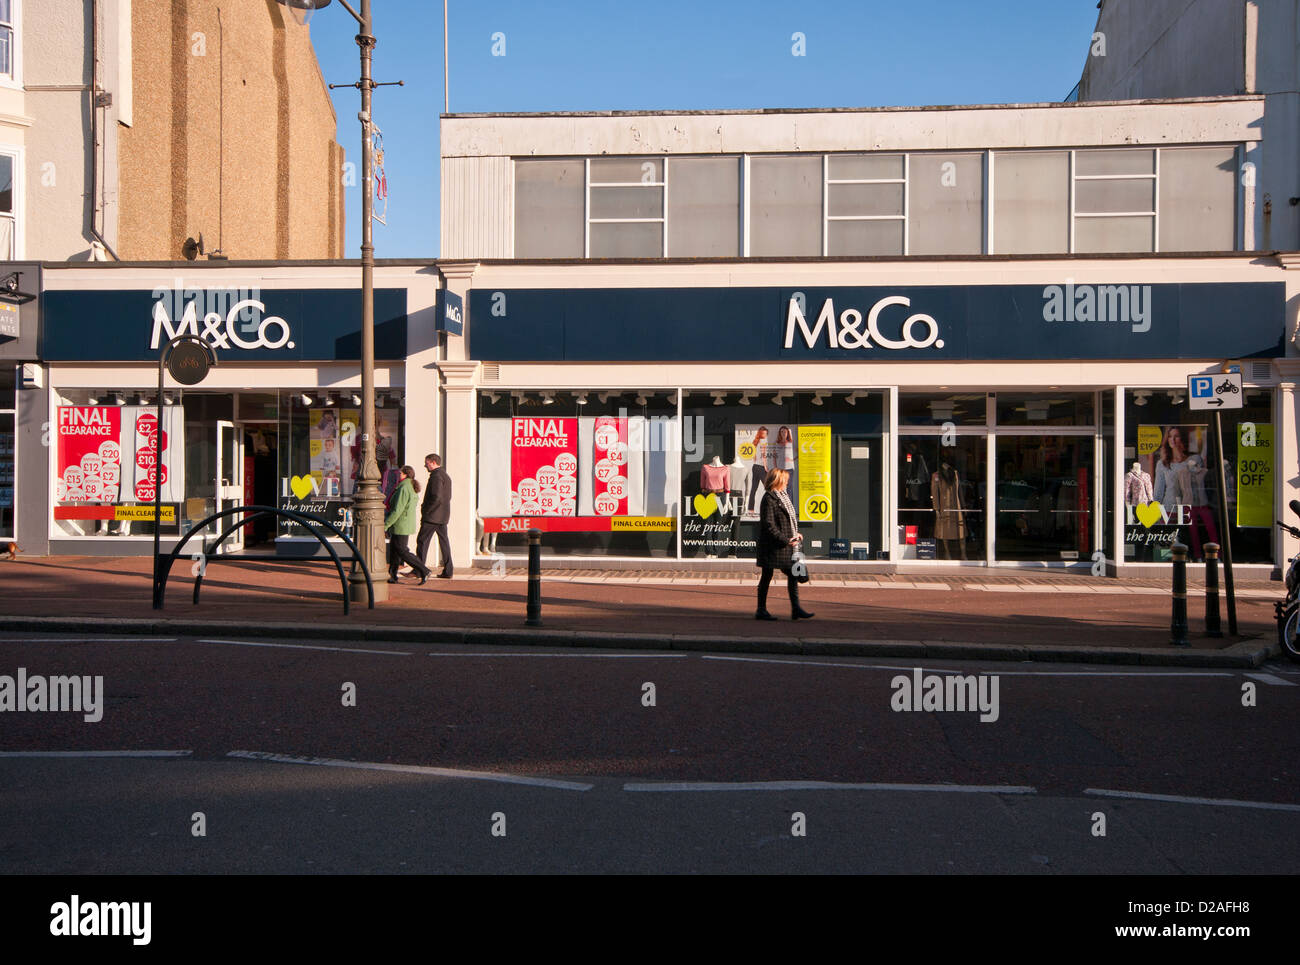 M&Co negozio di abbigliamento UK High Street negozi con vendita segni nella finestra Foto Stock